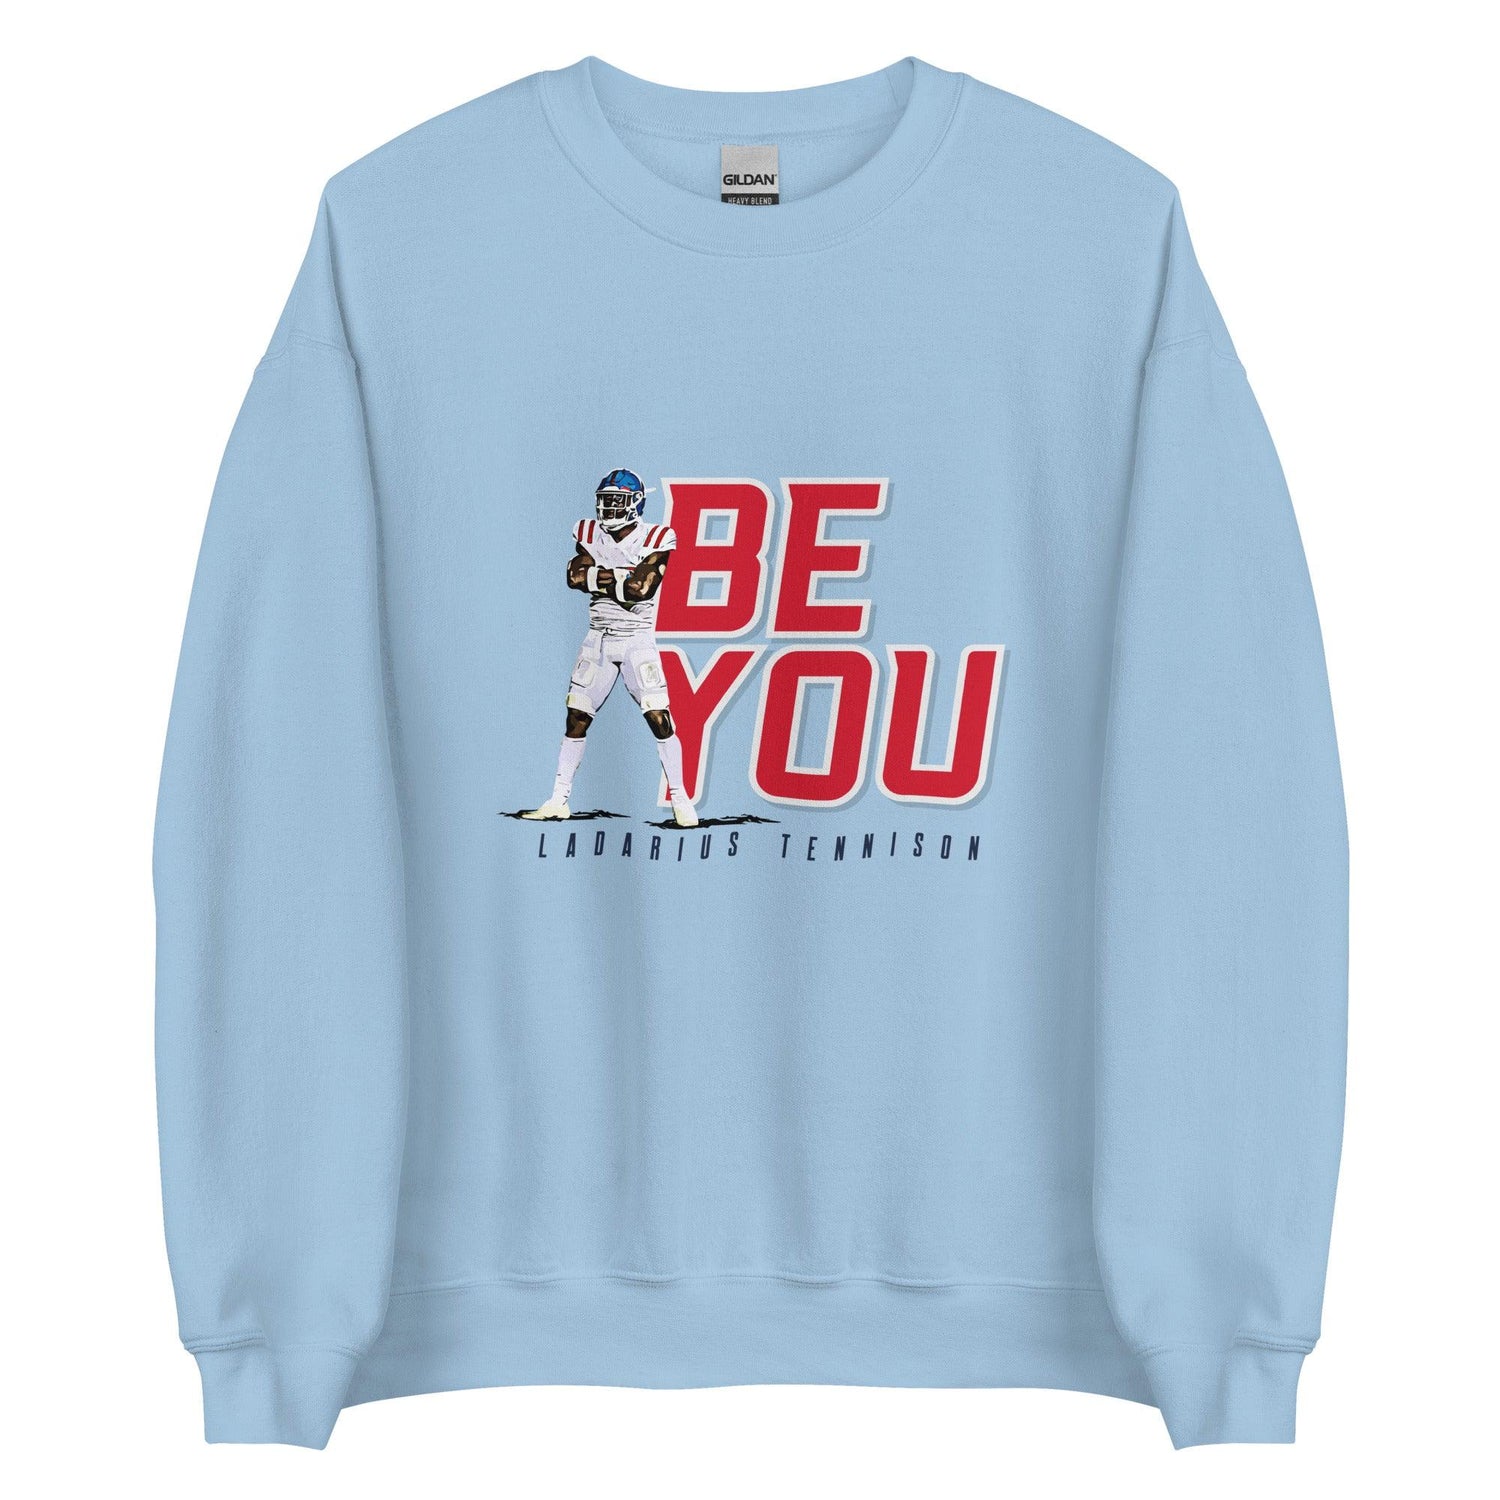 Ladarius Tennison "Be You" Sweatshirt - Fan Arch